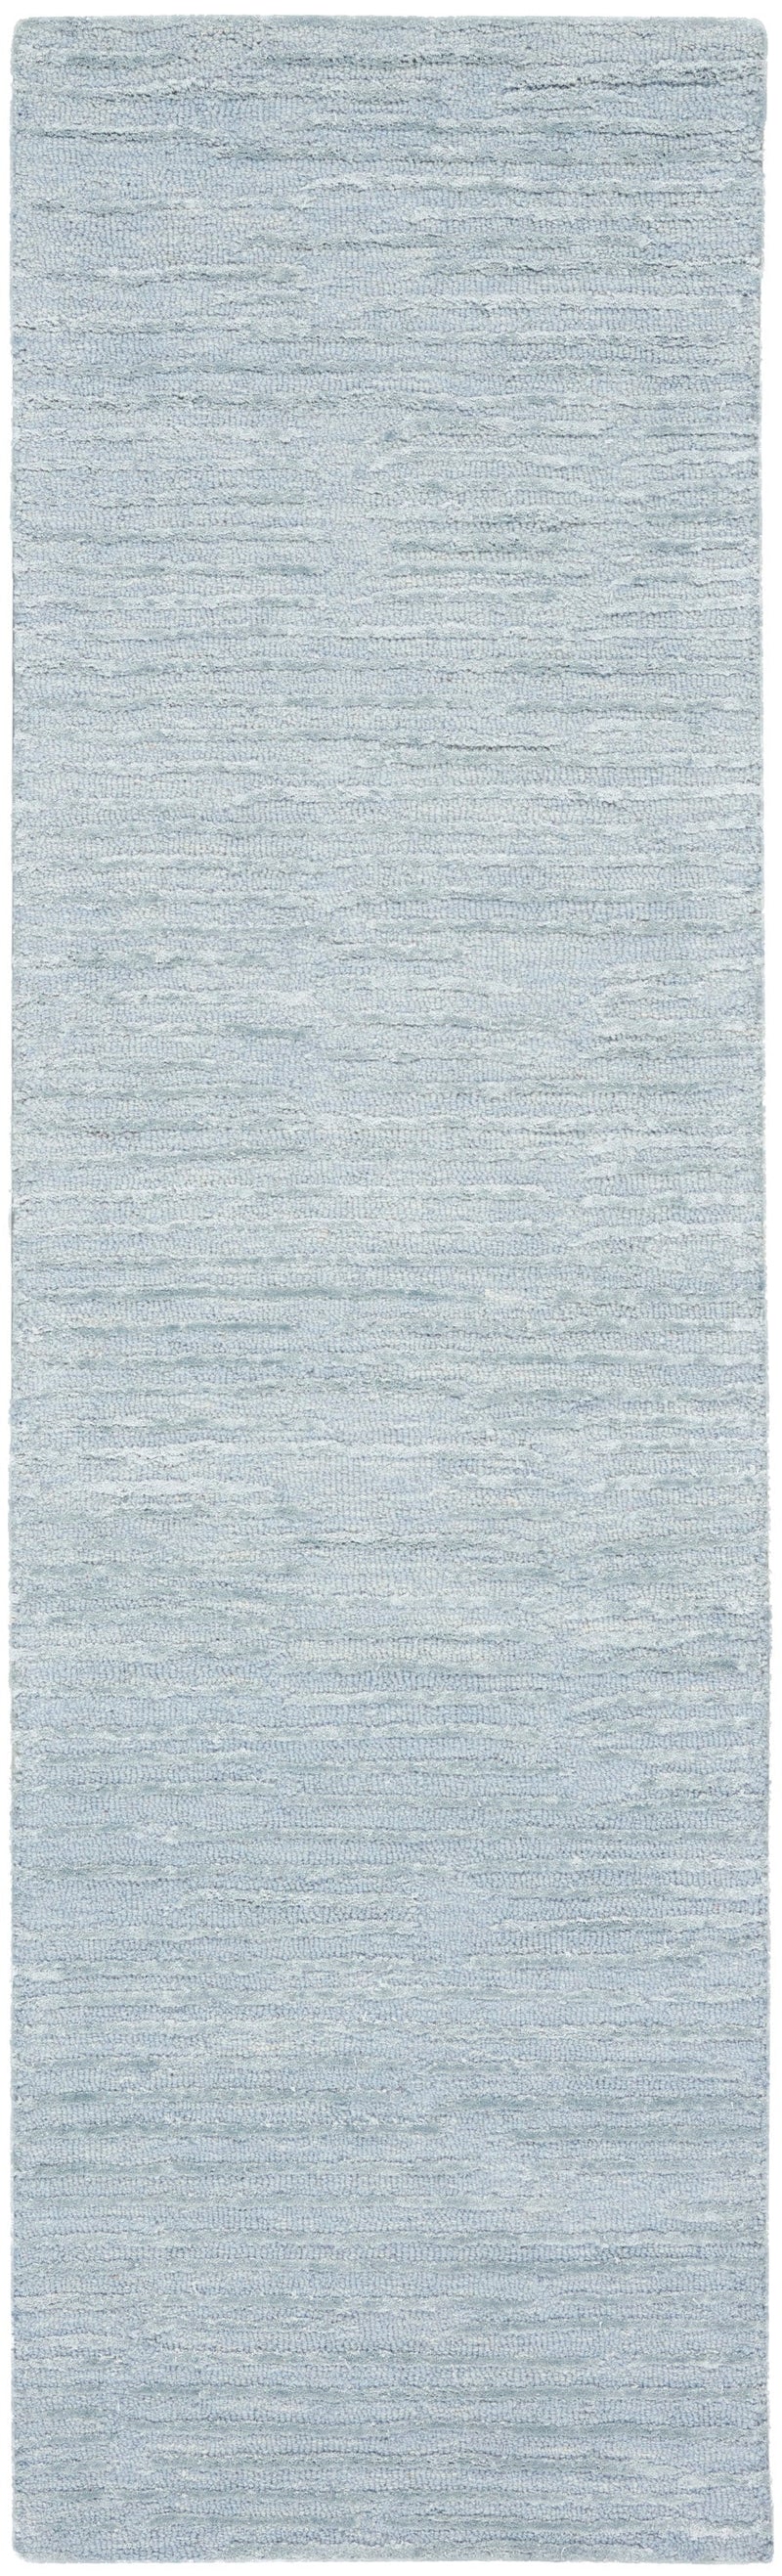 media image for ck010 linear handmade light blue rug by nourison 99446879950 redo 2 24